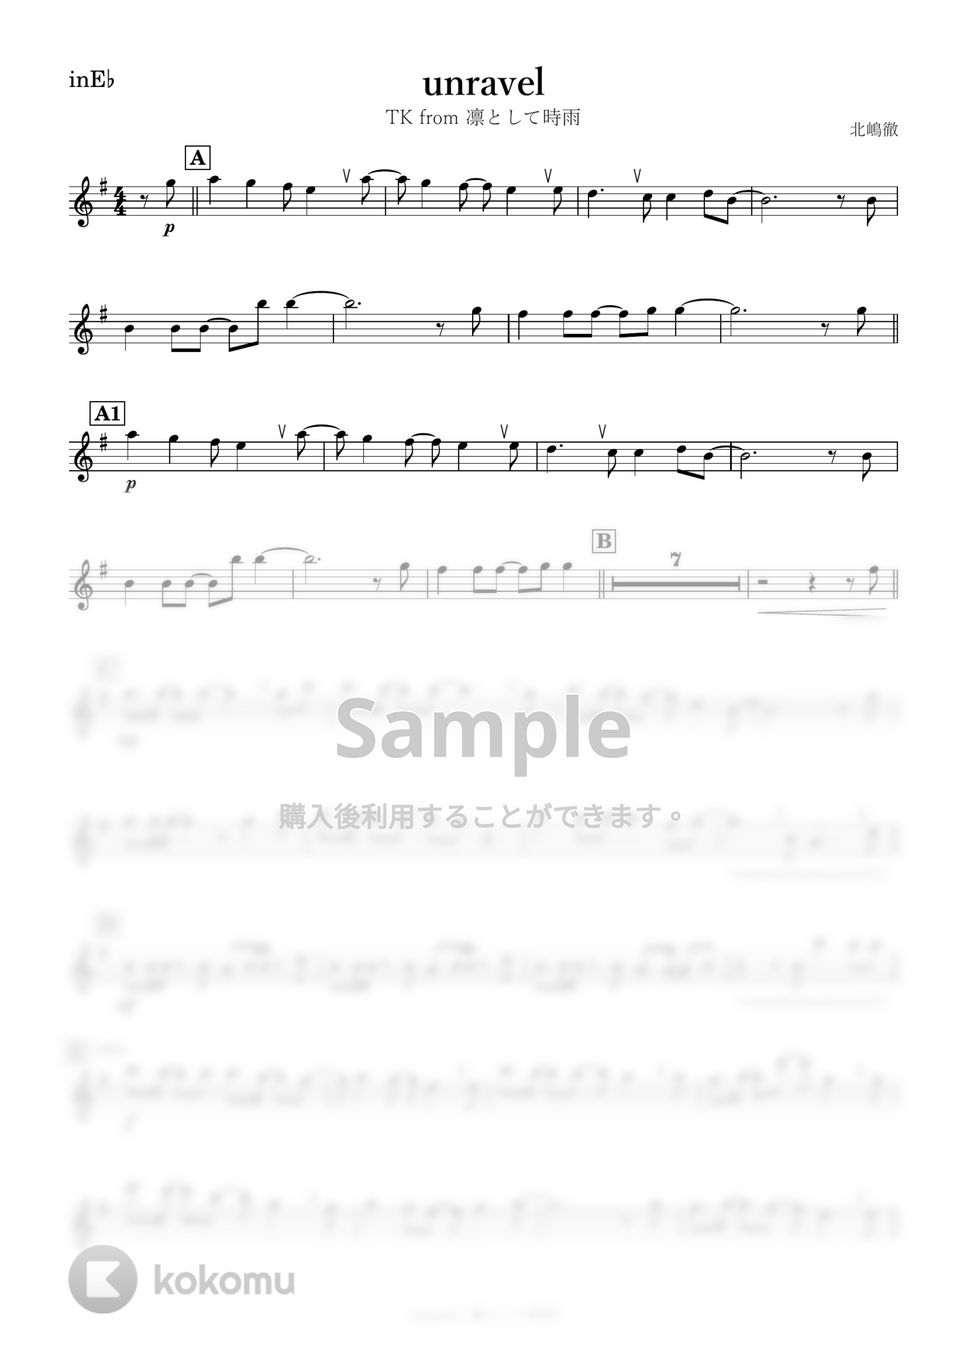 東京喰種ﾄｰｷｮｰｸﾞｰﾙ - unravel (E♭) by kanamusic